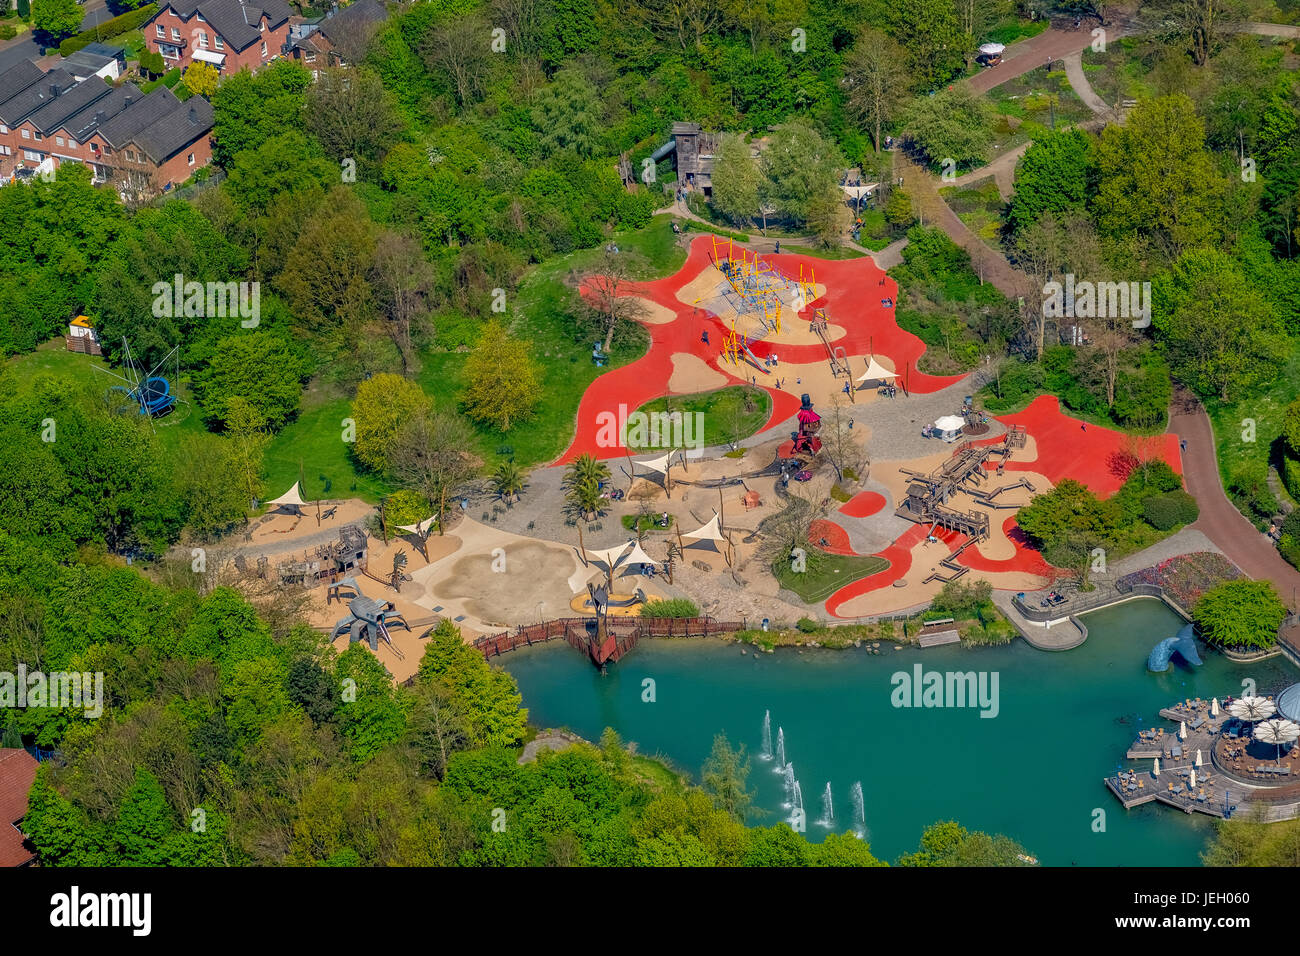 Spielplatz, Maximilian-Park Hamm, Hamm, Ruhrgebiet, Nordrhein-Westfalen, Deutschland Stockfoto